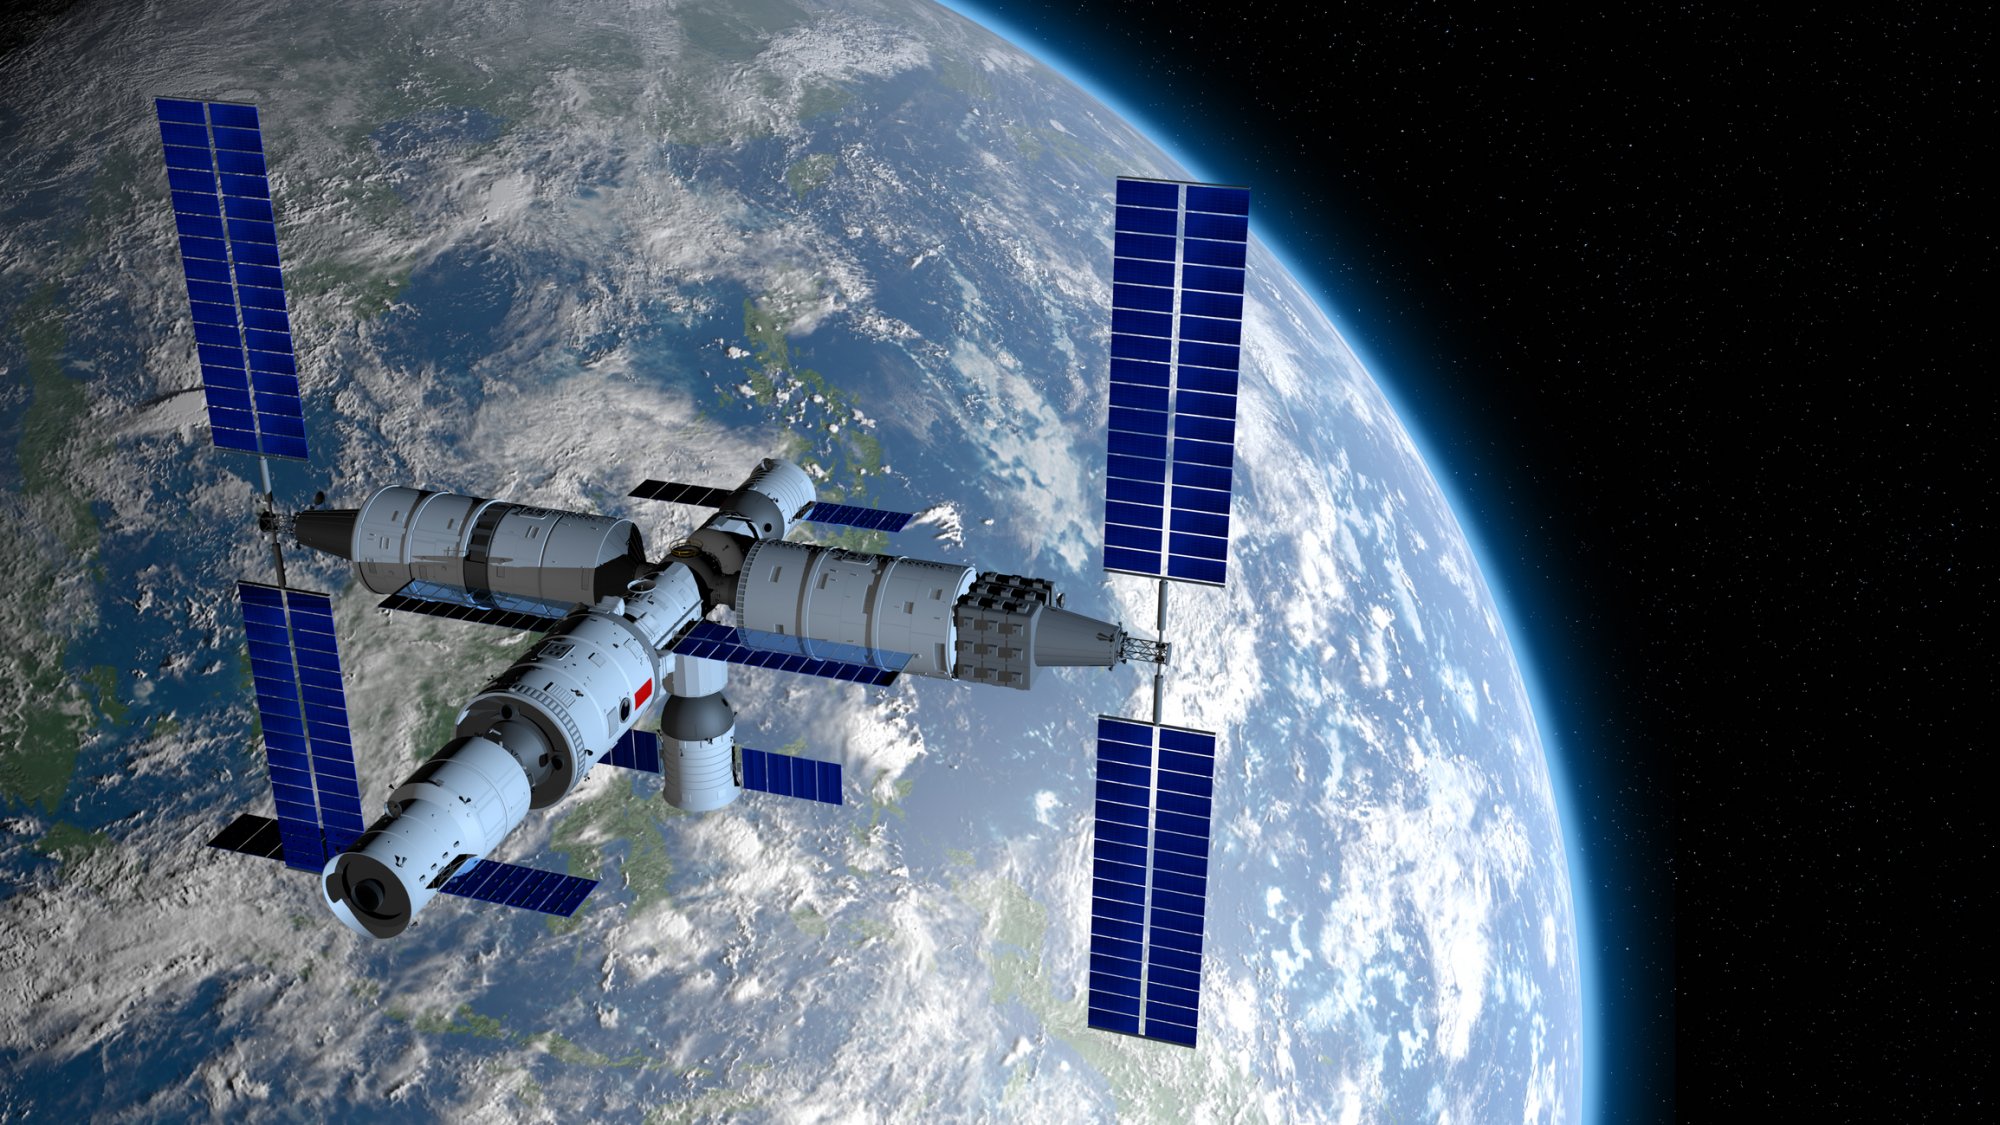 Ο κινεζικός διαστημικός σταθμός επεκτείνεται ως απάντηση στον ISS